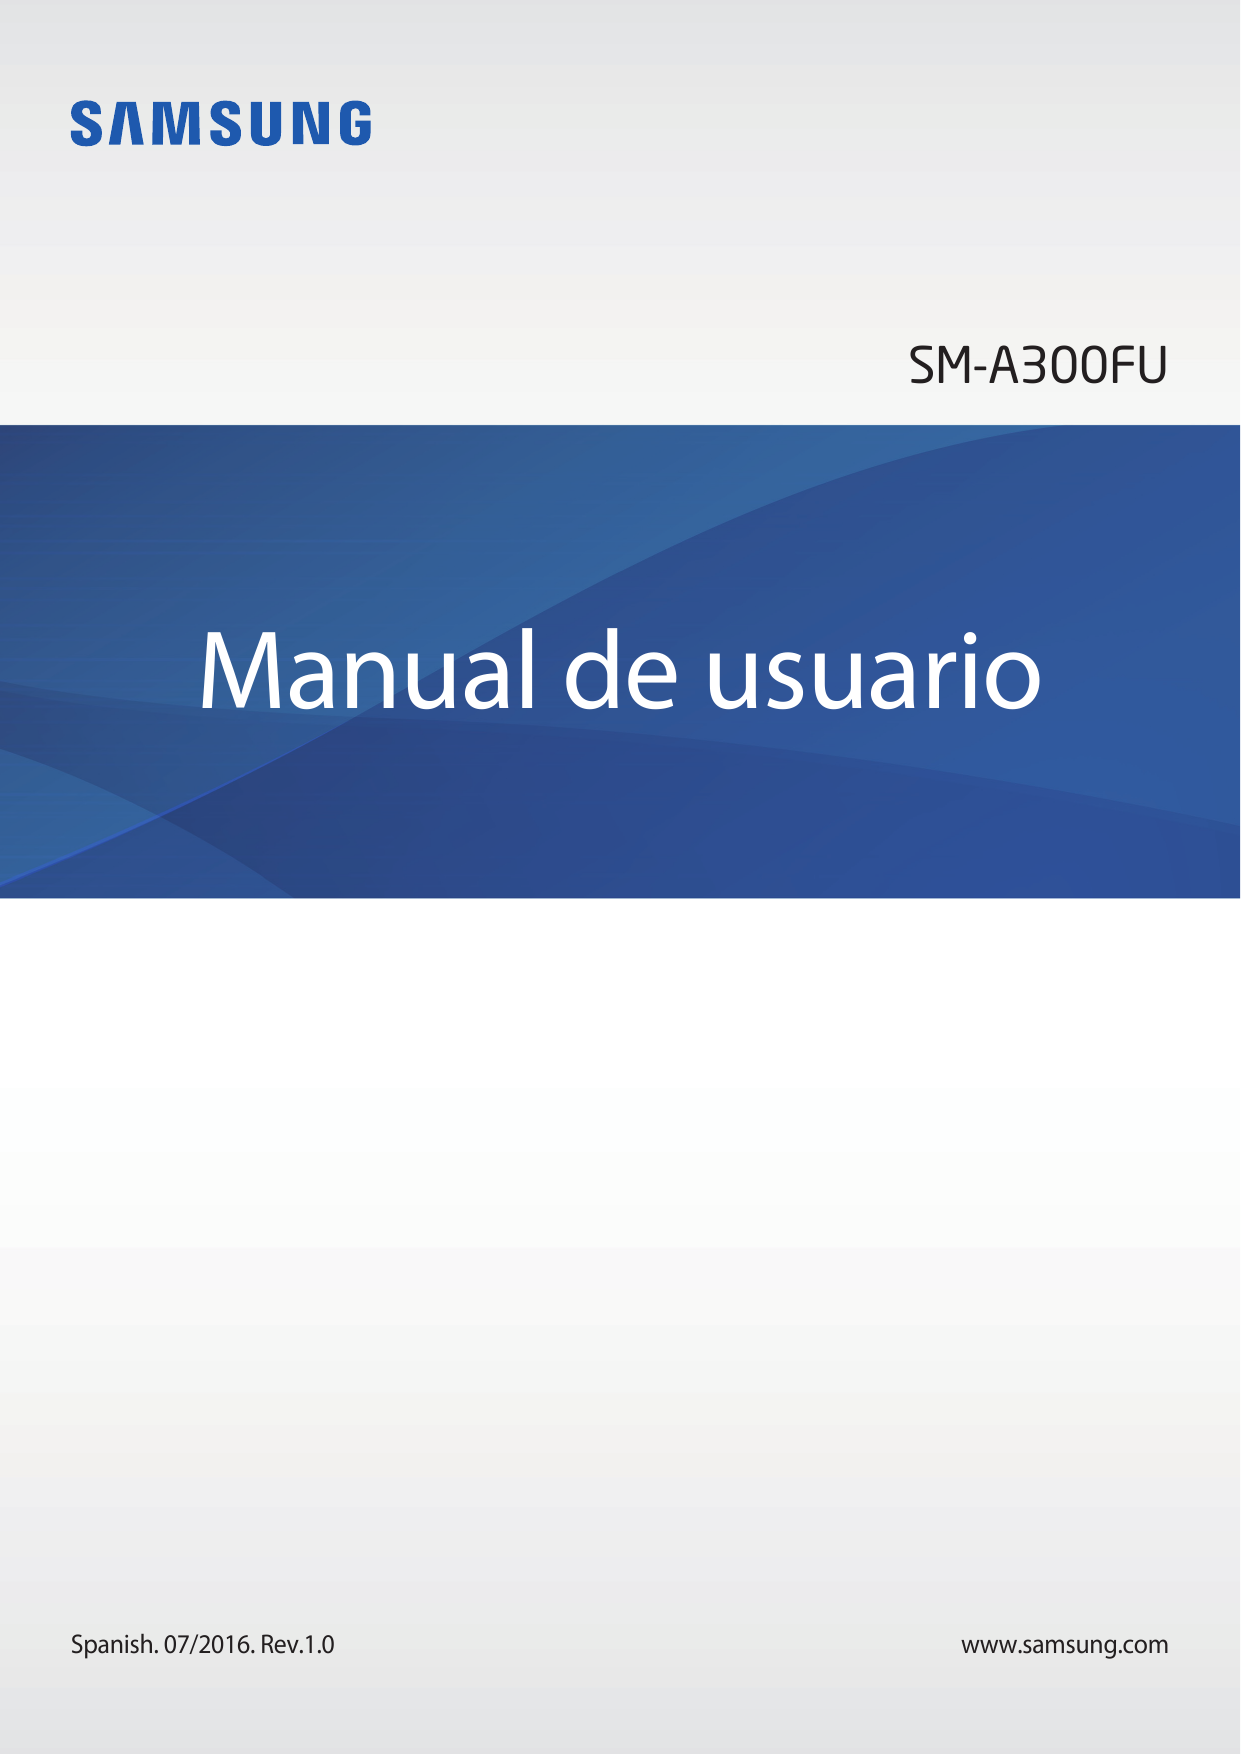 SM-A300FUManual de usuarioSpanish. 07/2016. Rev.1.0www.samsung.com